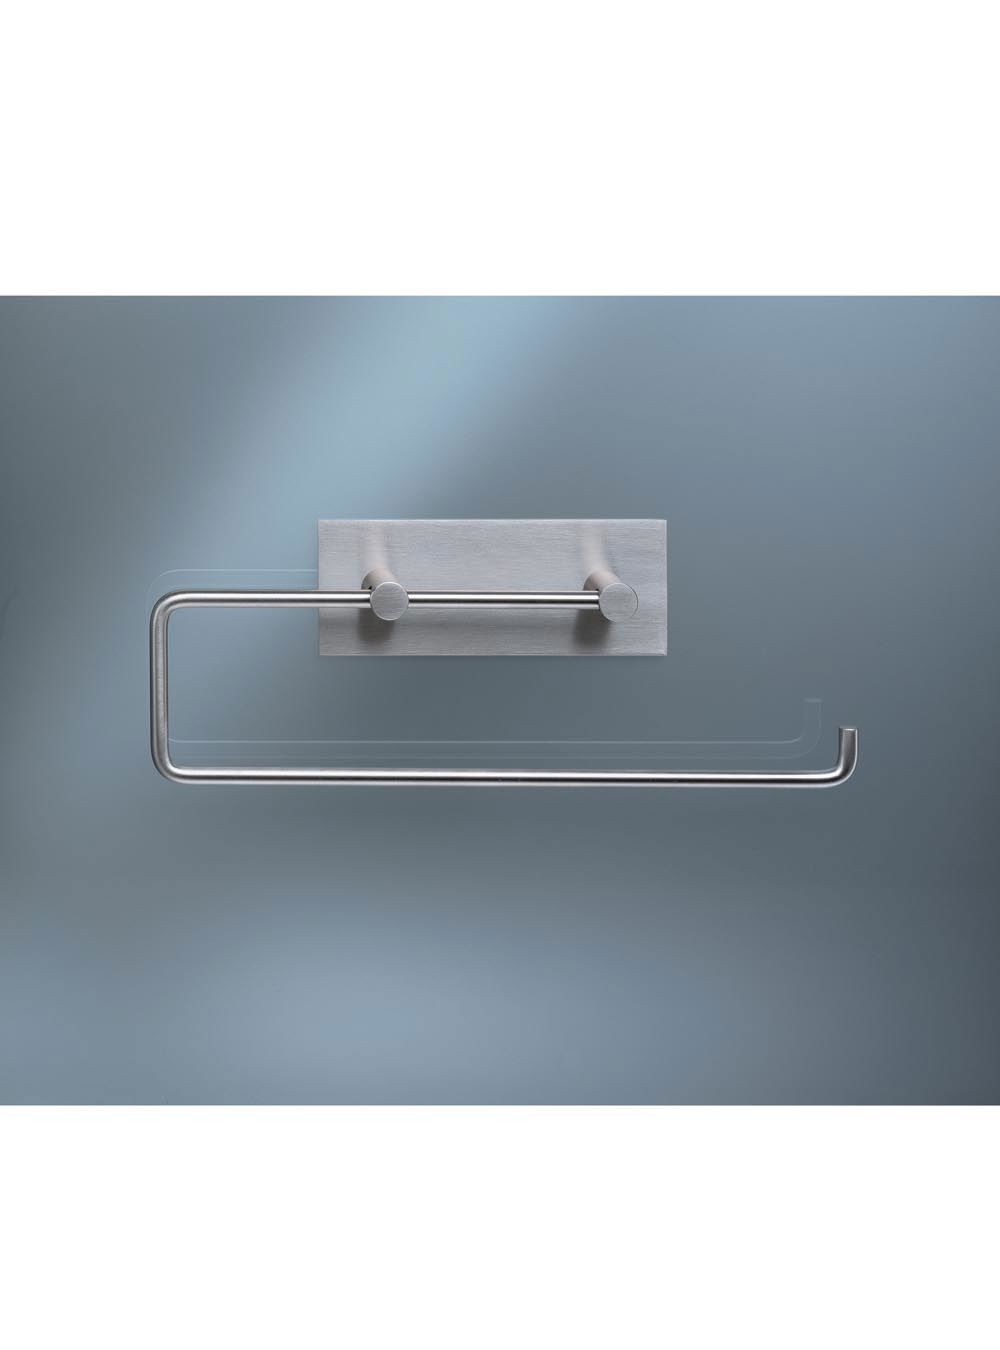 T13: Papierhalter für zwei WC-Rollen oder eine Papierhandtuchrolle (Küchenrolle), Bügellänge 237 mm.